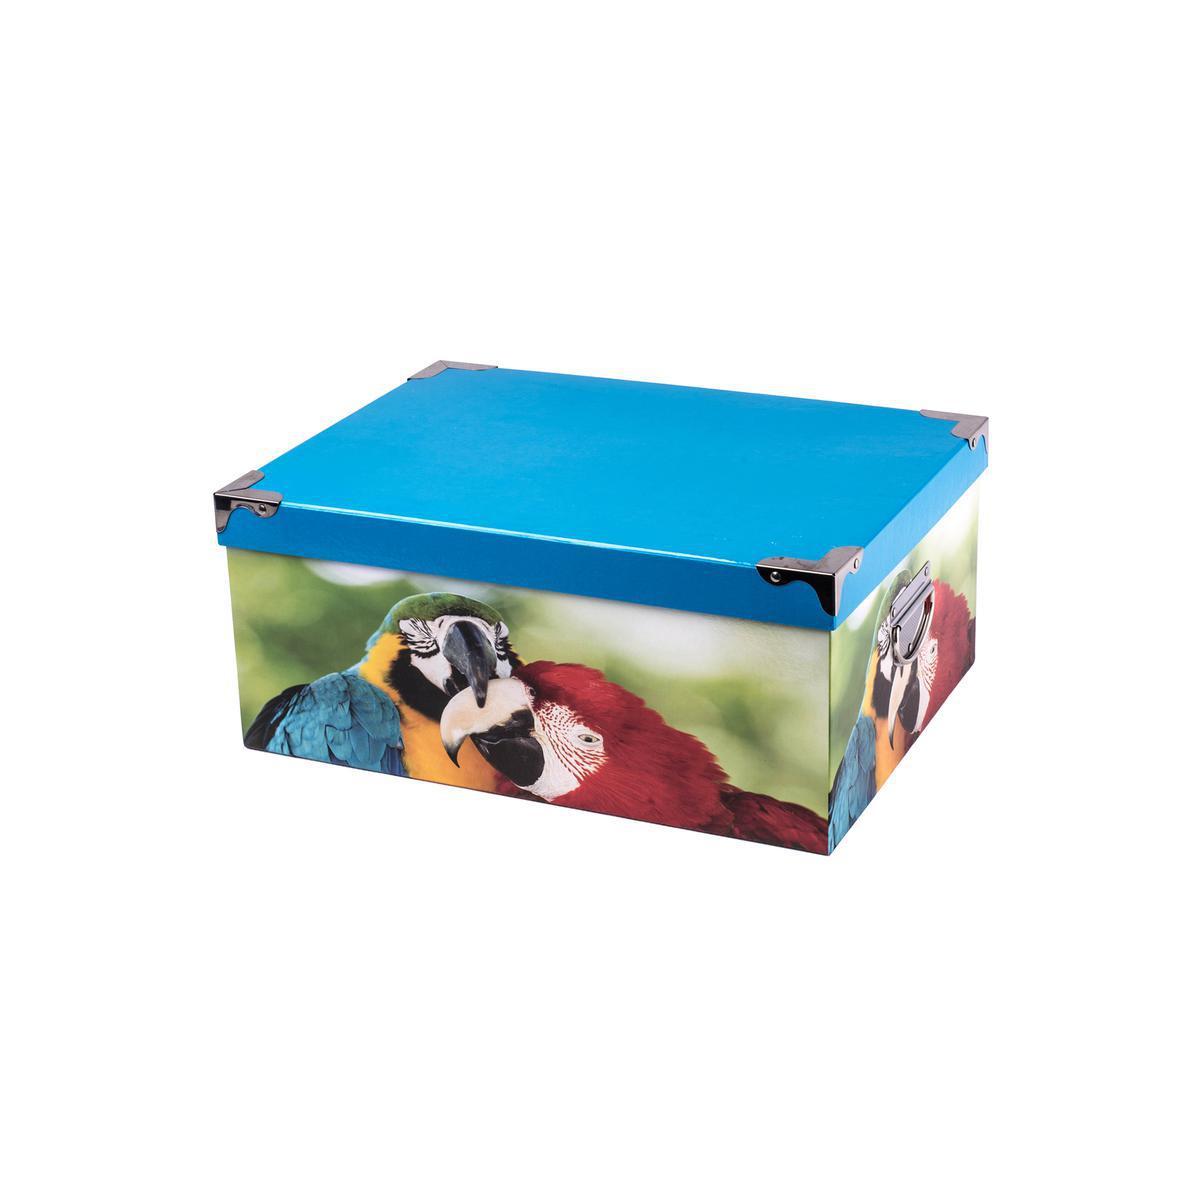 Boîte de rangement - Carton et métal - 29 x 21 x H 12,5 cm - Multicolore